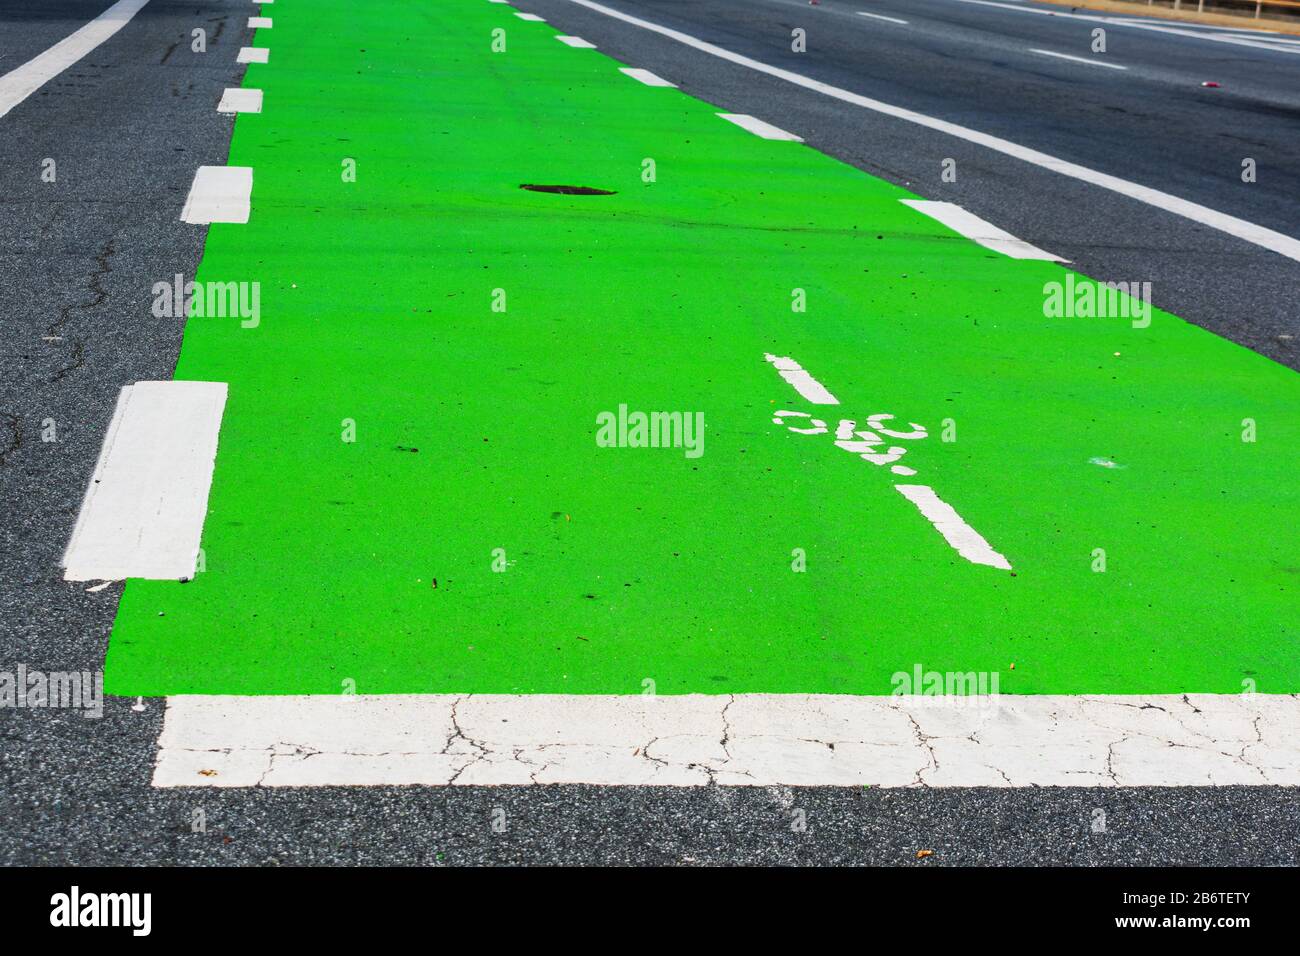 Primo piano. La superficie della pista ciclabile di colore verde comunica agli utenti della strada che una parte della strada è stata messa da parte per preferenziale o dedicata Foto Stock